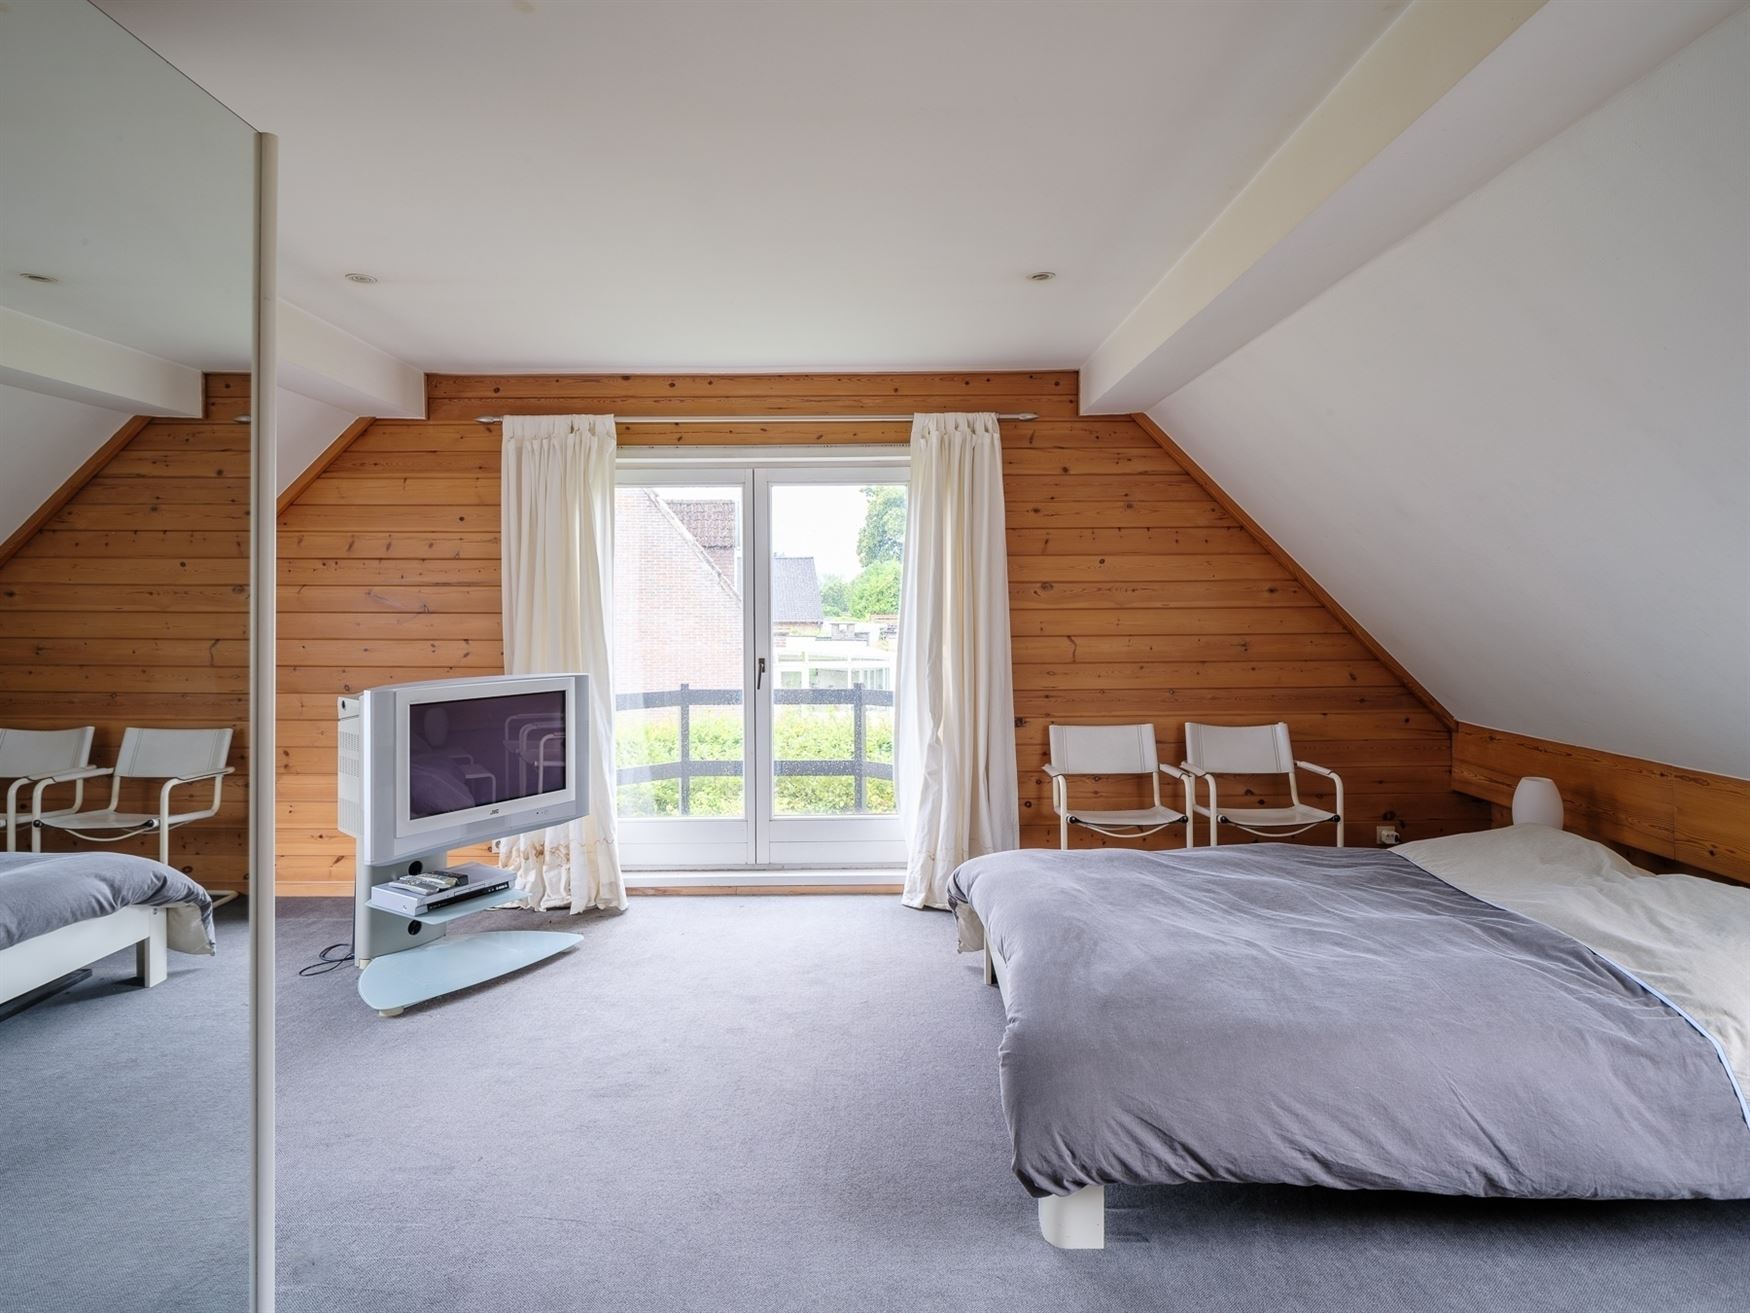 Modernistische villa met woon/werk optie.
Centraal gelegen tussen Gent en Brussel, op slechts 10 minuten van Geraardsbergen, Ninove of Zottegem: Opha...